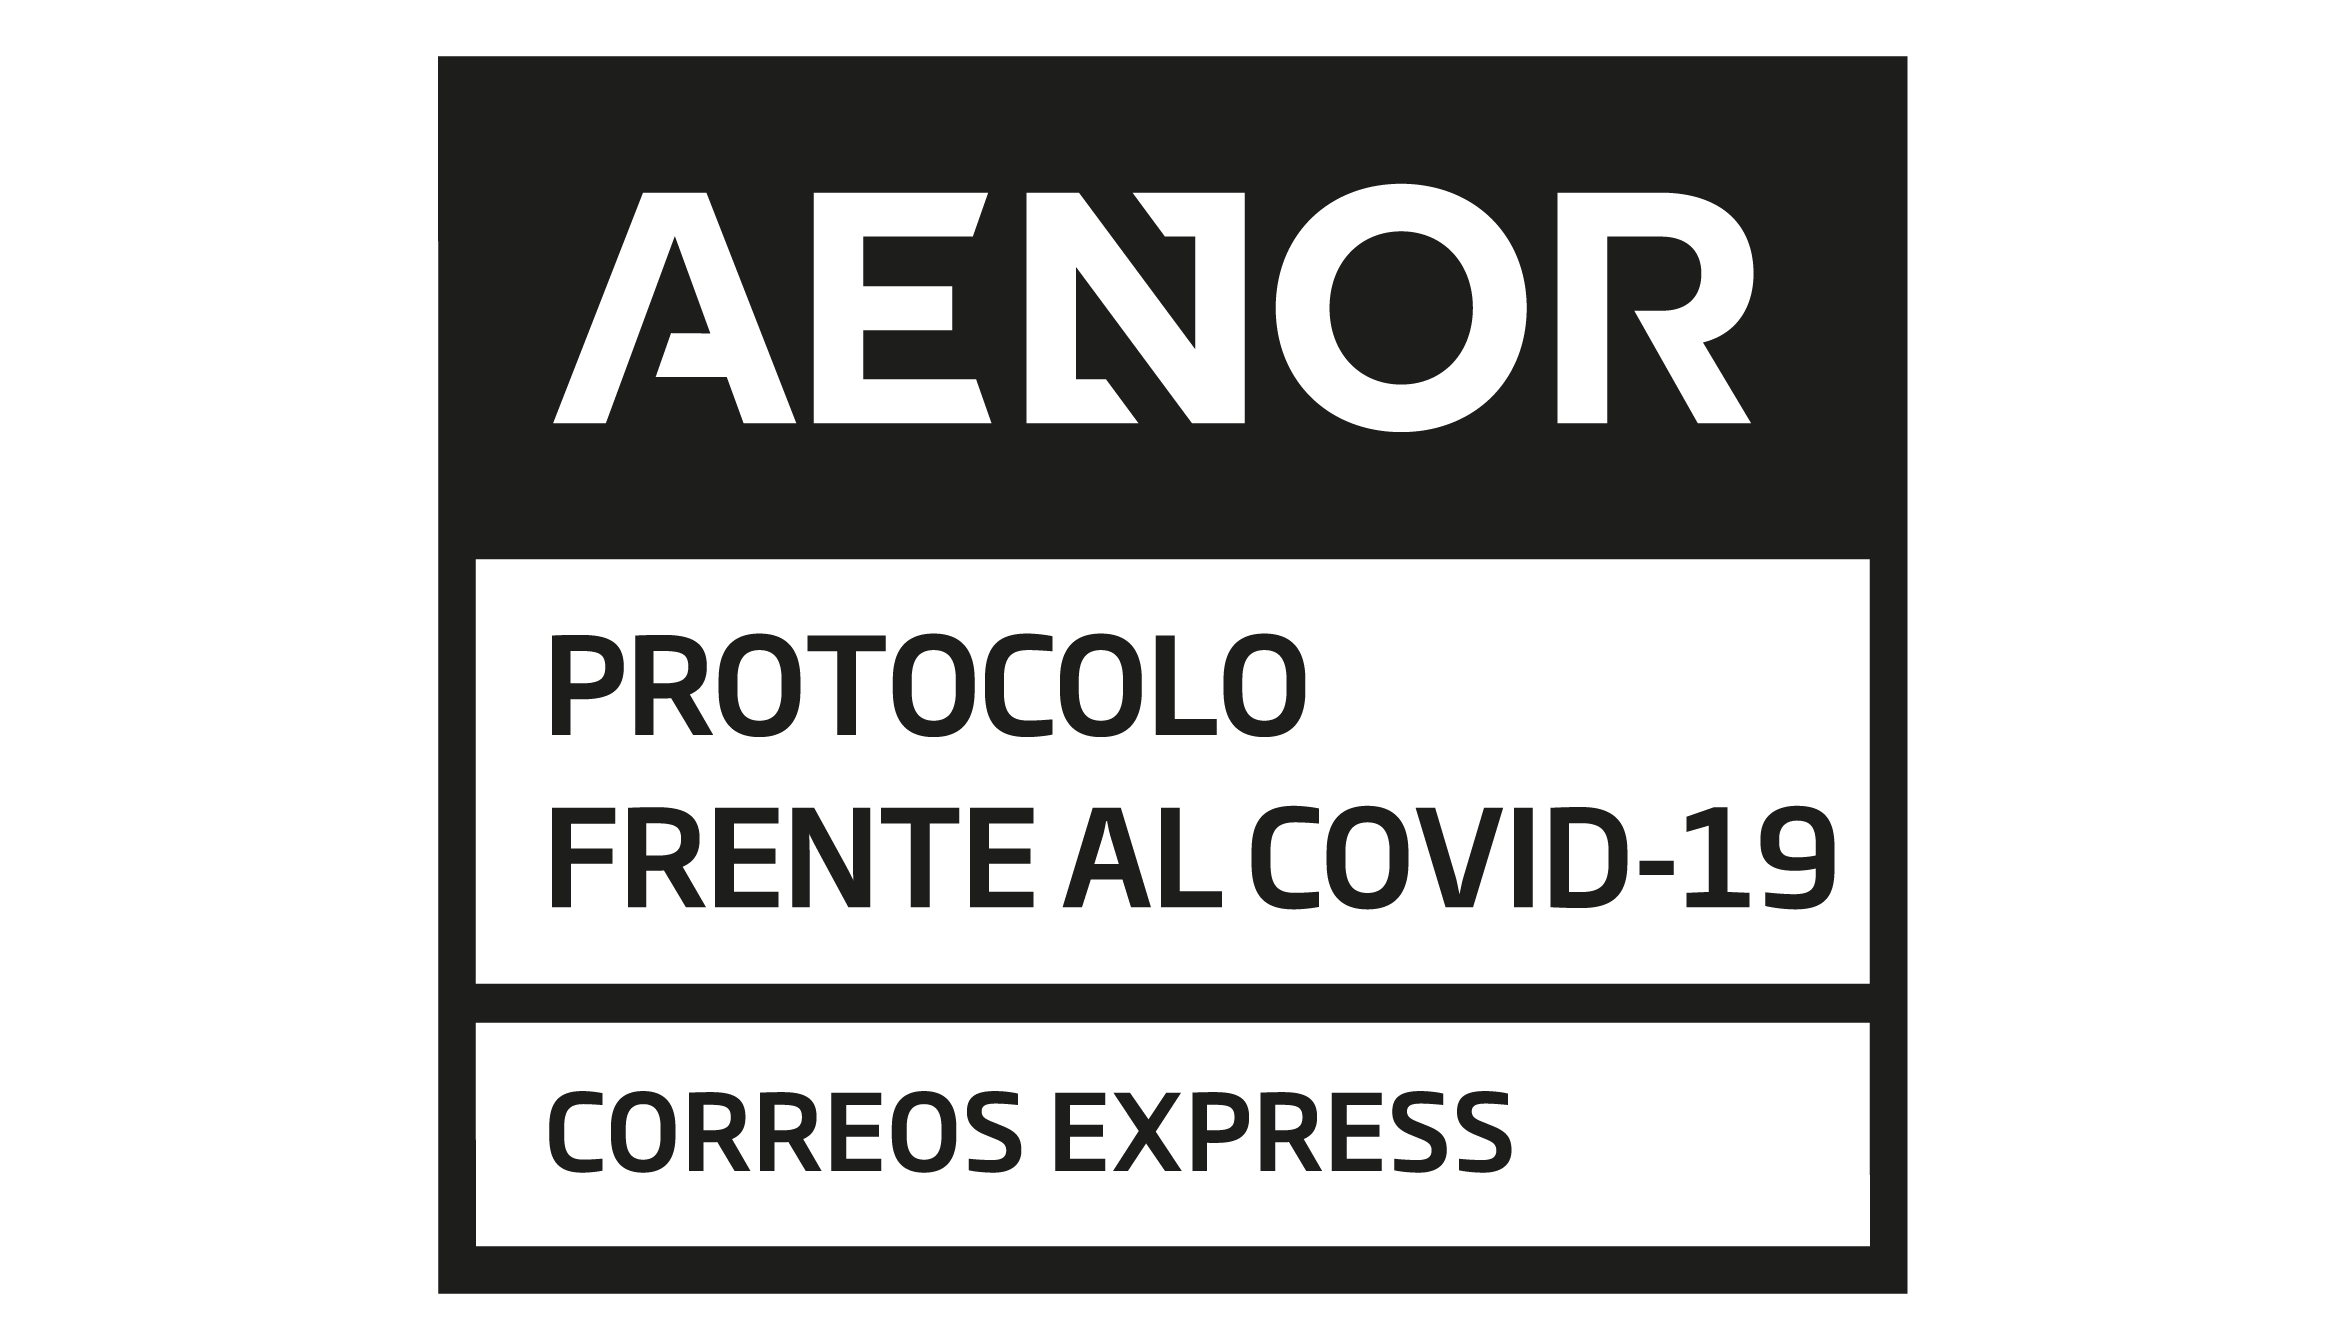 Correos Express obtiene la certificación de AENOR por su protocolo de actuación frente a la Covid-19